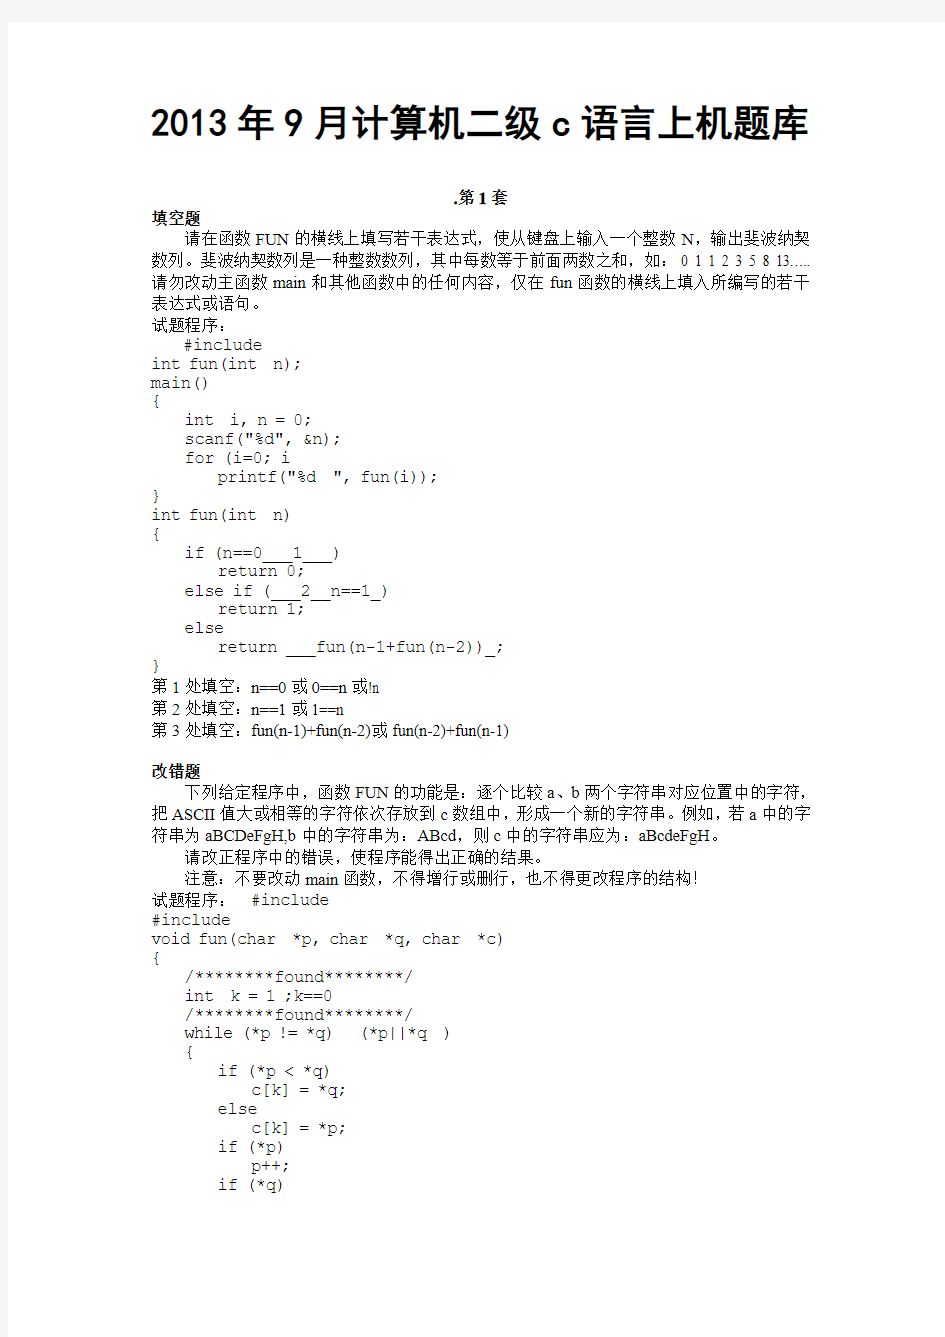 2013年9月计算机二级C语言上机题库及答案(破译版)